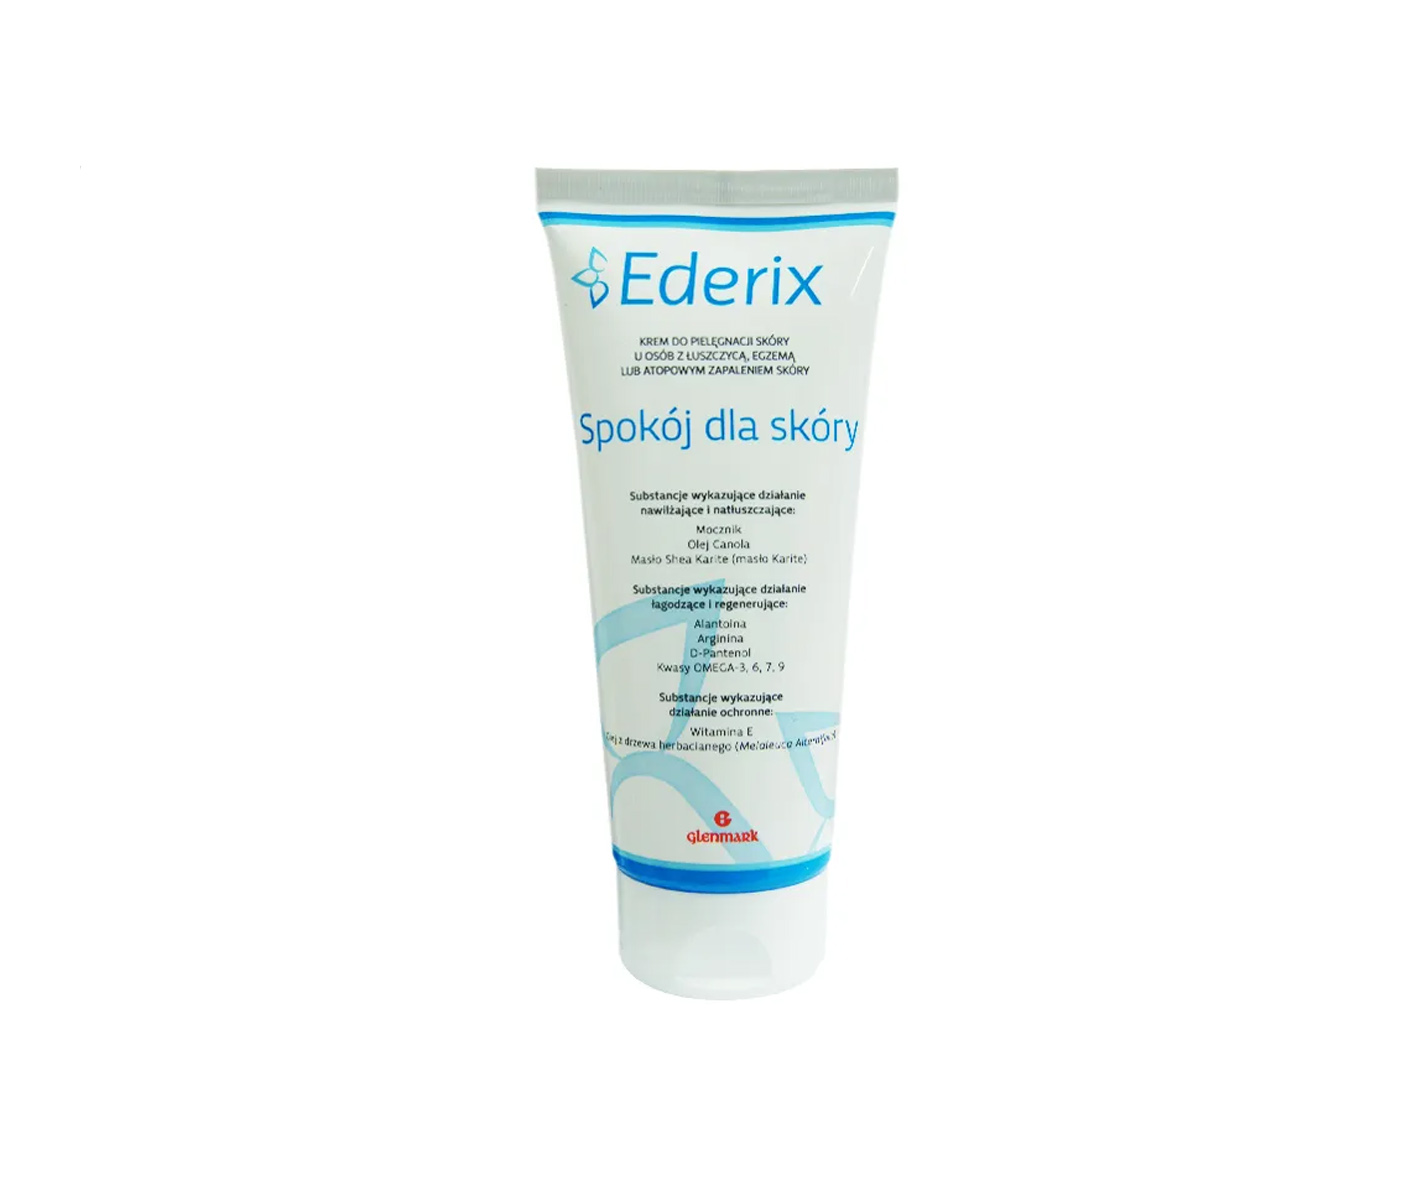 Ederix, Calm für die Haut, Creme für problematische Haut